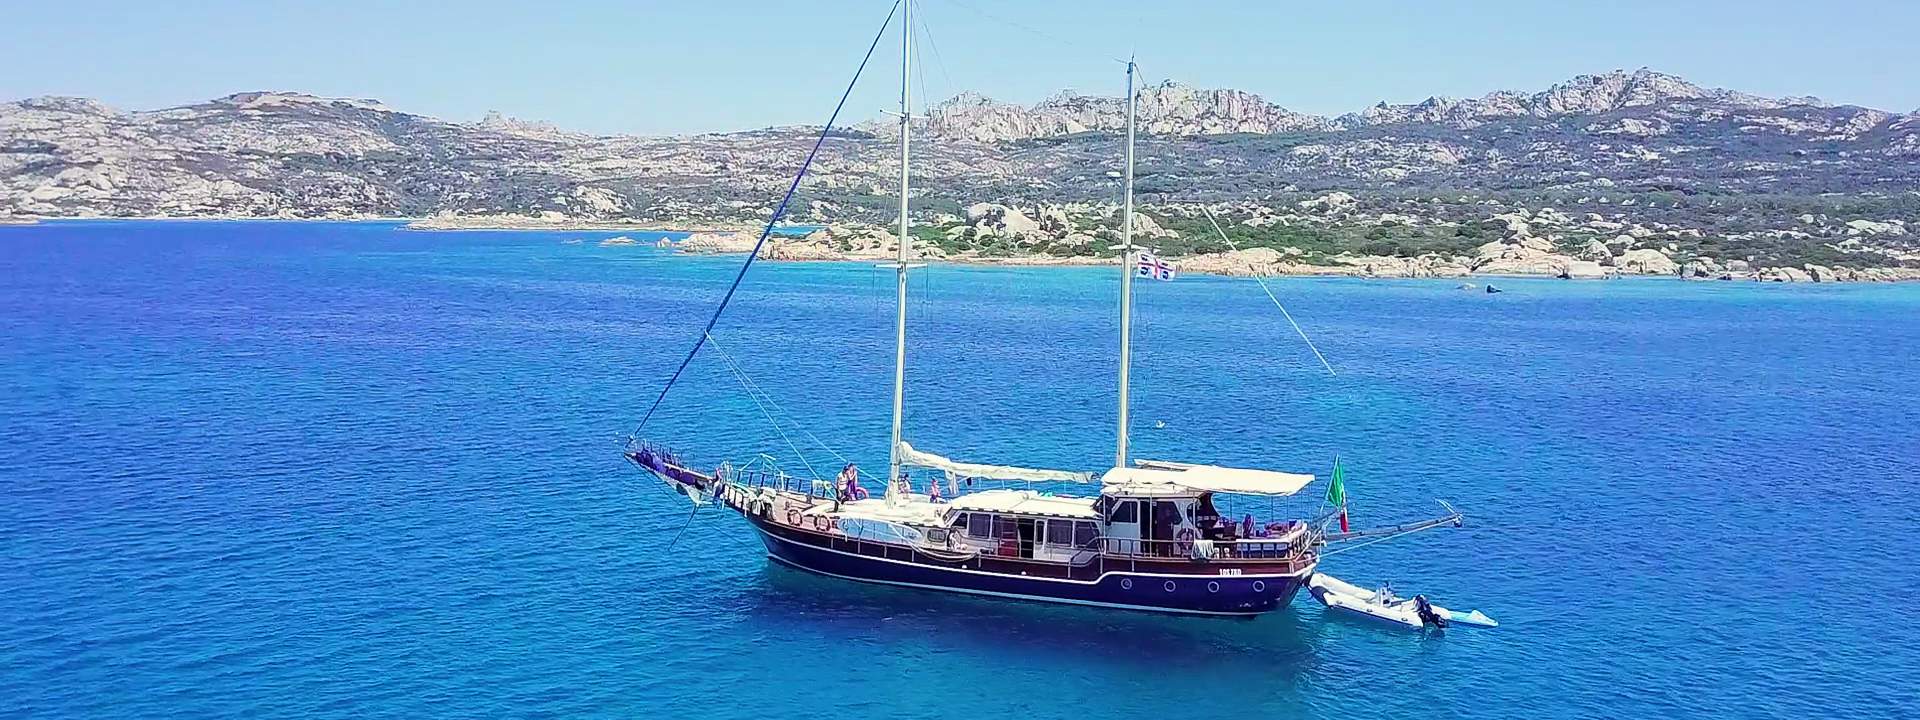 Le isole della Maddalena, crociera alla cabina a bordo di una goletta